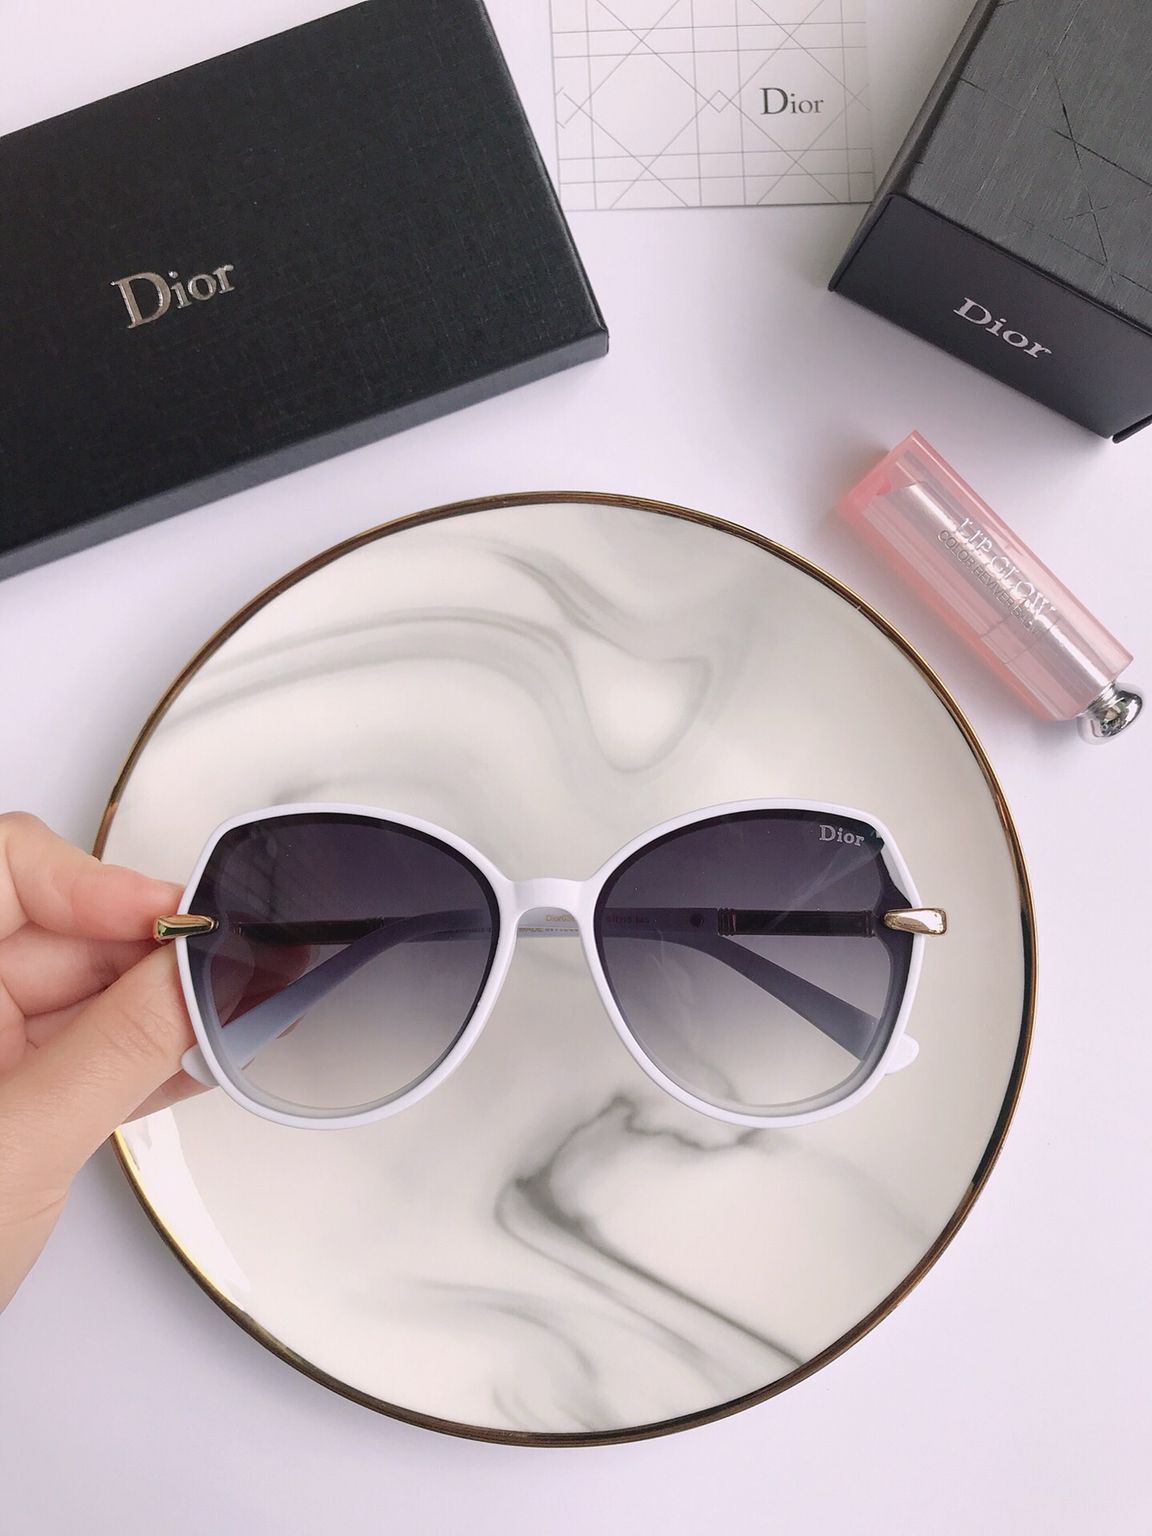 Dior迪奥时尚板材圆框男女通用太阳眼镜